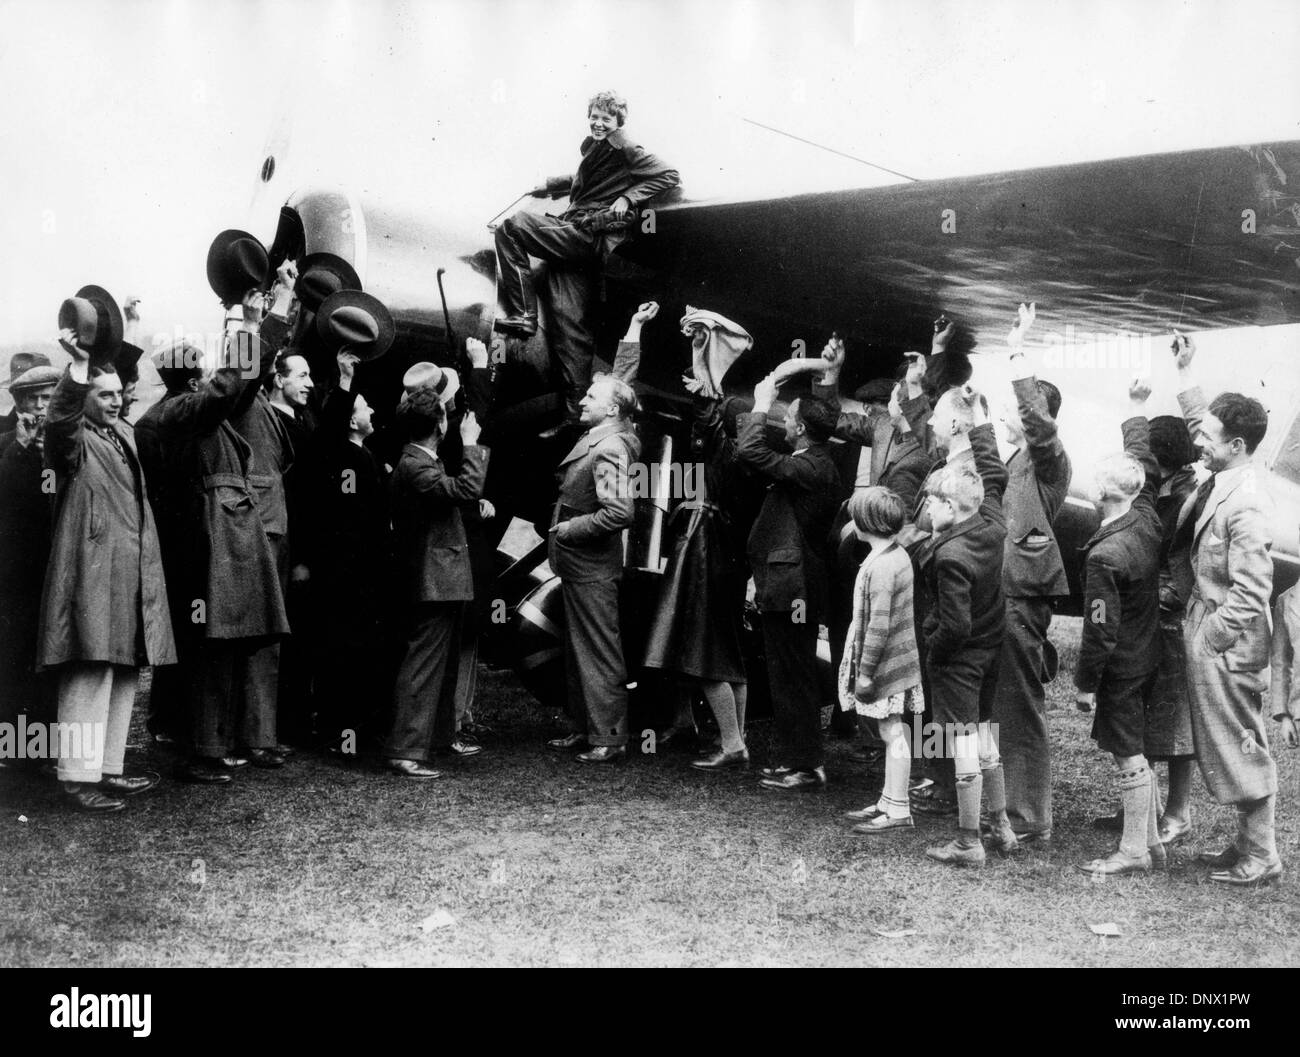 21. Mai 1932 - Londonderry, Irland - der weibliche Flieger AMELIA EARHART, erhält die erste Frau, die allein über den Atlantik fliegen Beifall von der Masse nach Landung in Nord-Irland. (Kredit-Bild: © KEYSTONE Bilder USA/ZUMAPRESS.com) Stockfoto